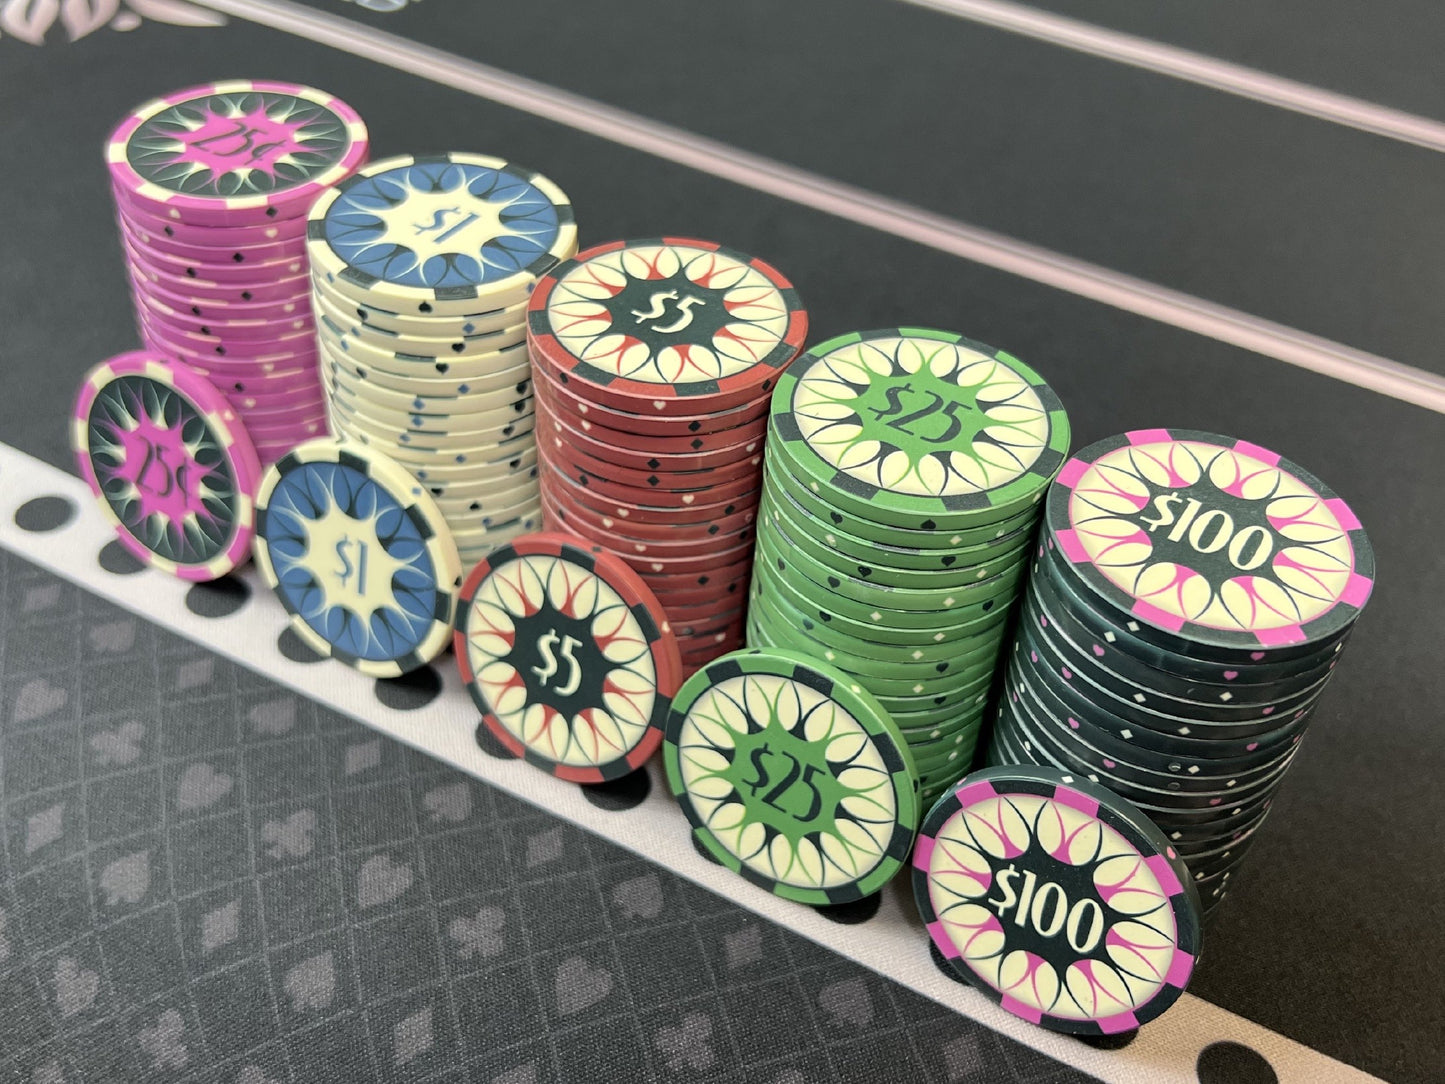 Summer Solstice Poker Chips [39mm]